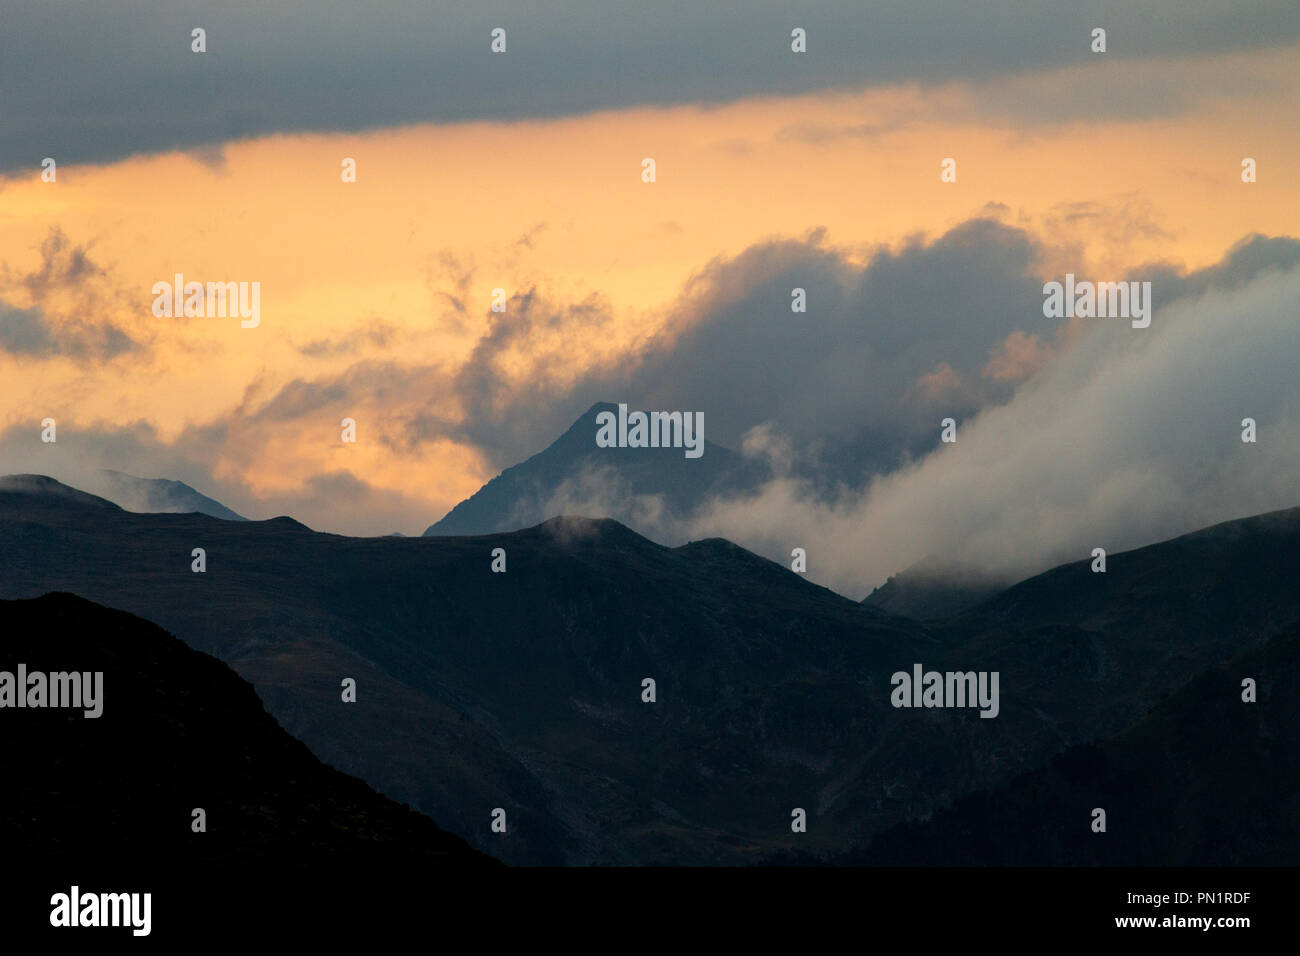 Eine Wolkenbildung umgibt einen Berg bei Sonnenuntergang. Stockfoto